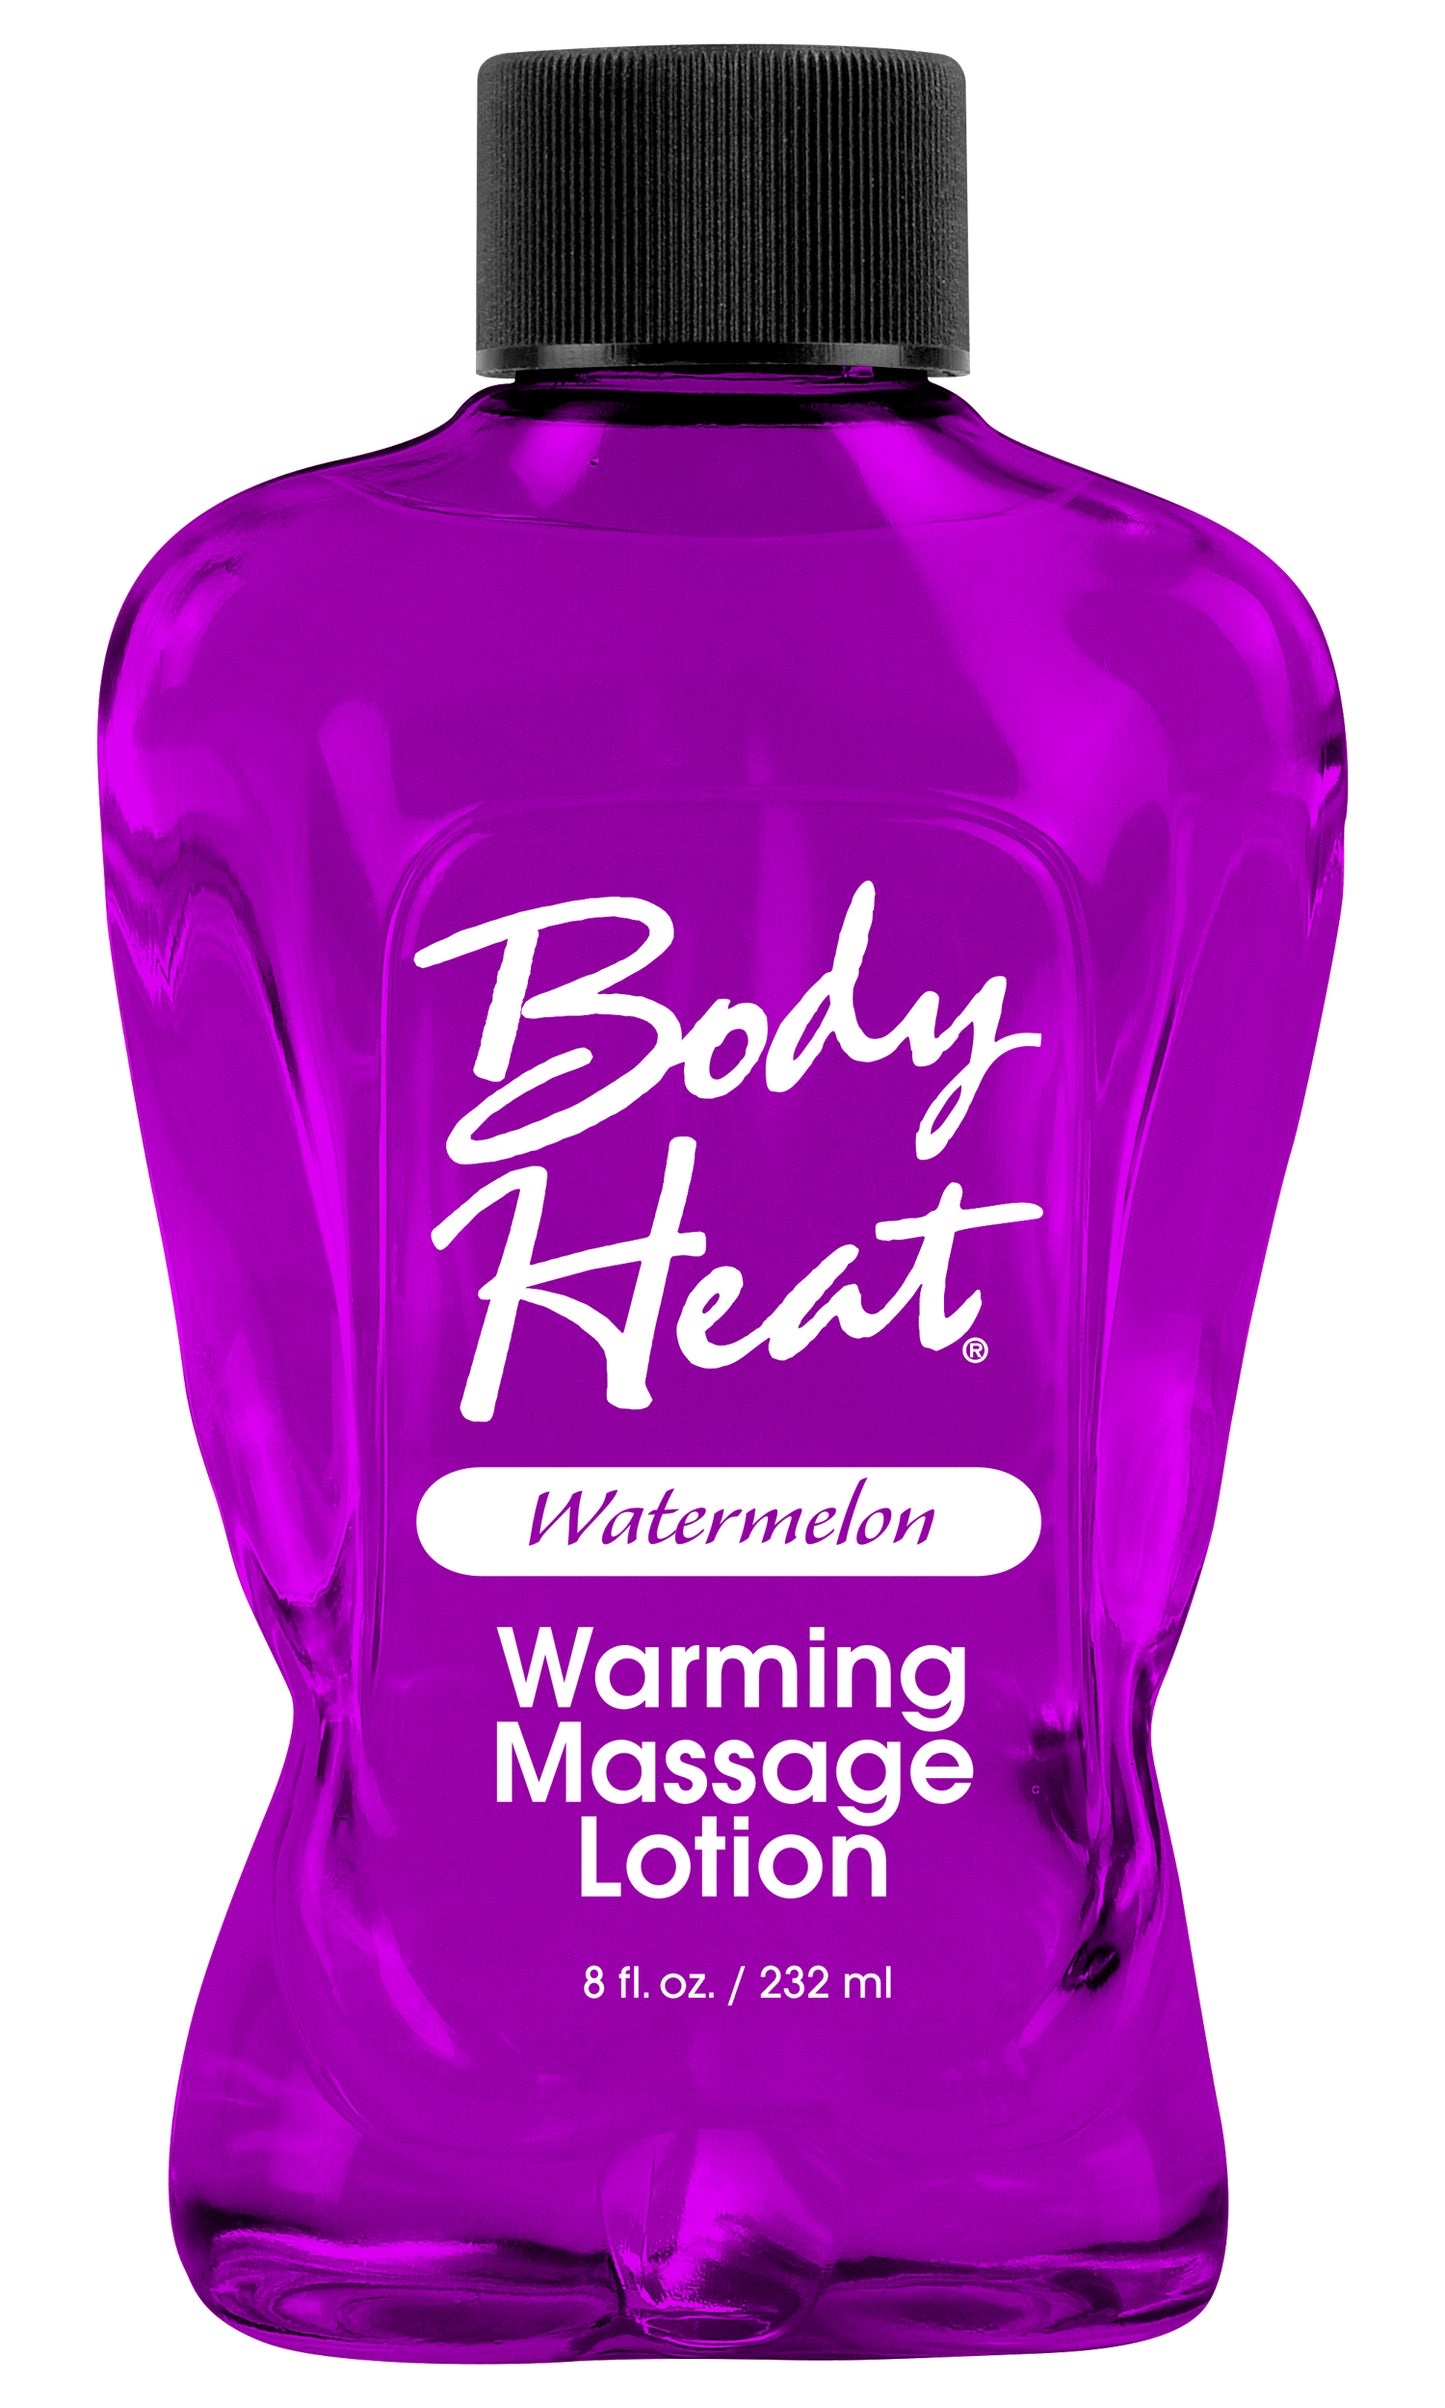 Body Heat Warming Massage Lotion Watermelon